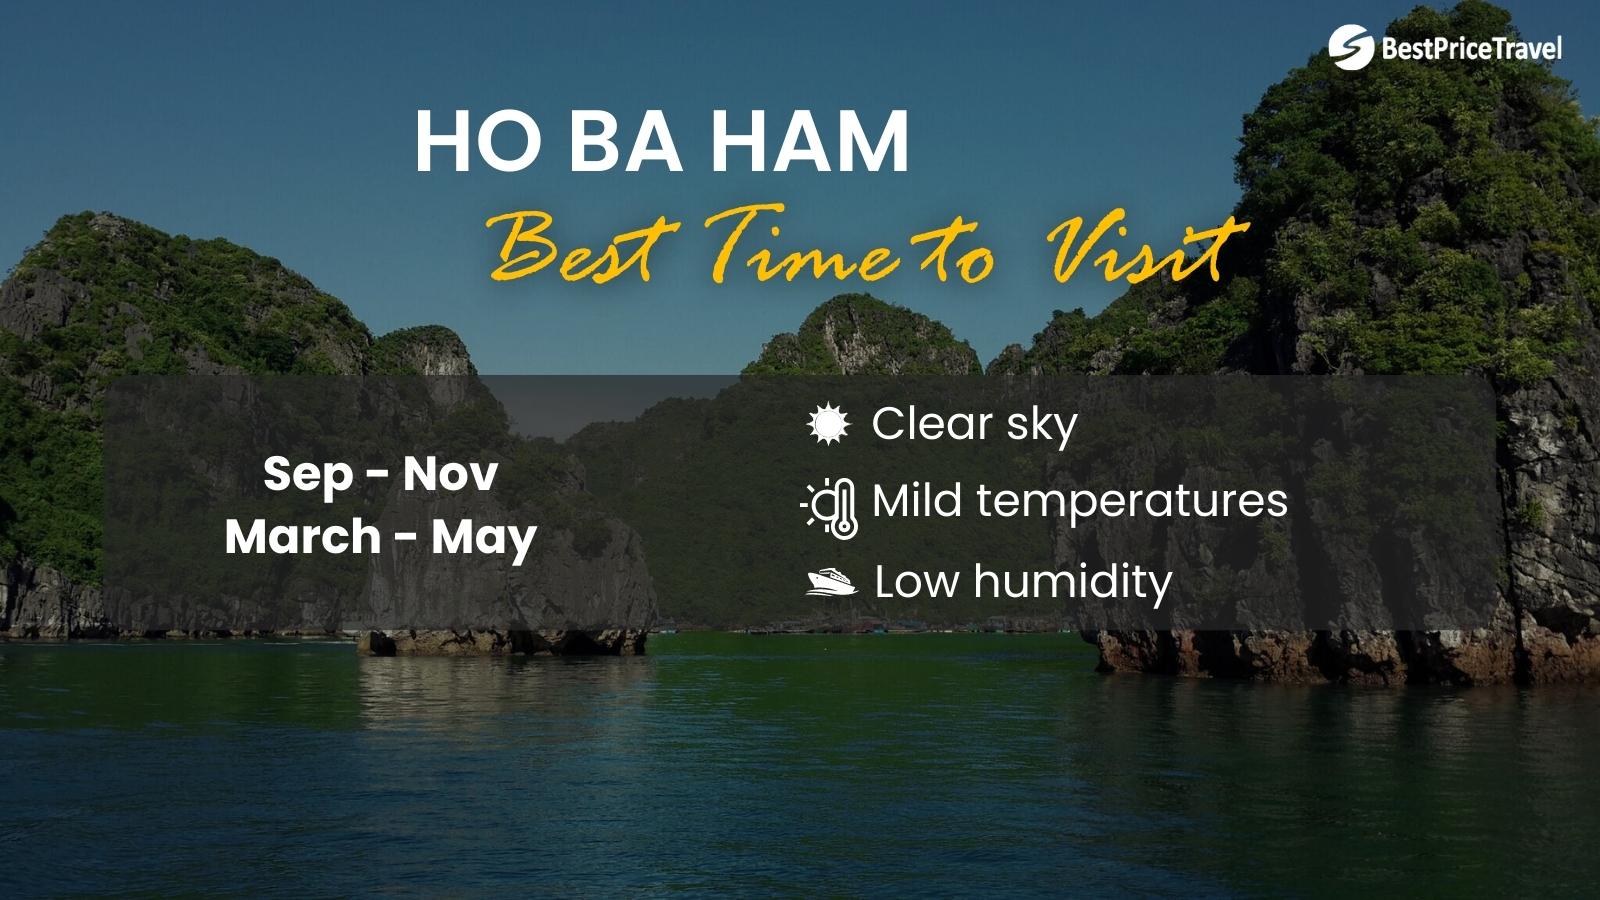 Ho Ba Ham Time To Visit